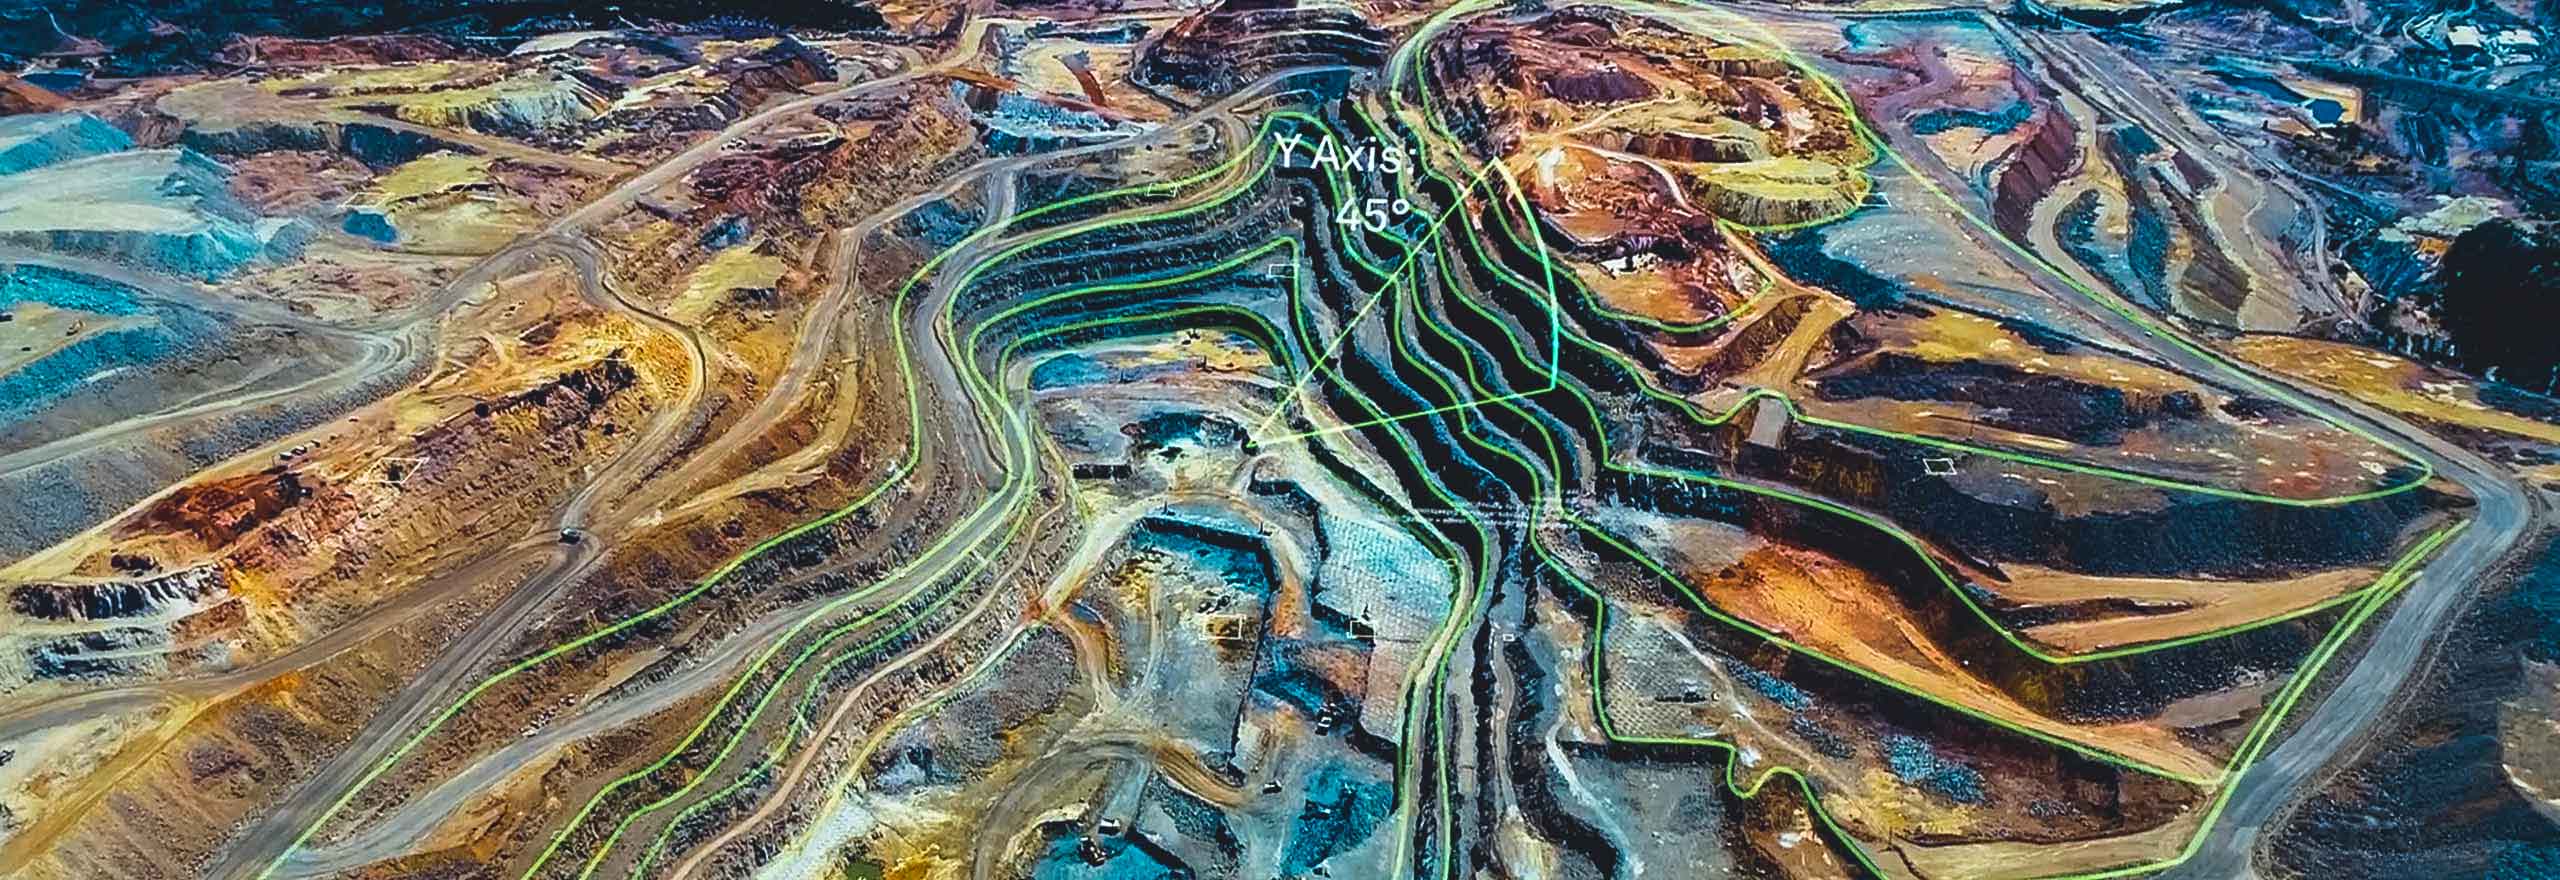 Una vista aérea de una mina superpuesta con elementos digitales que representan un análisis